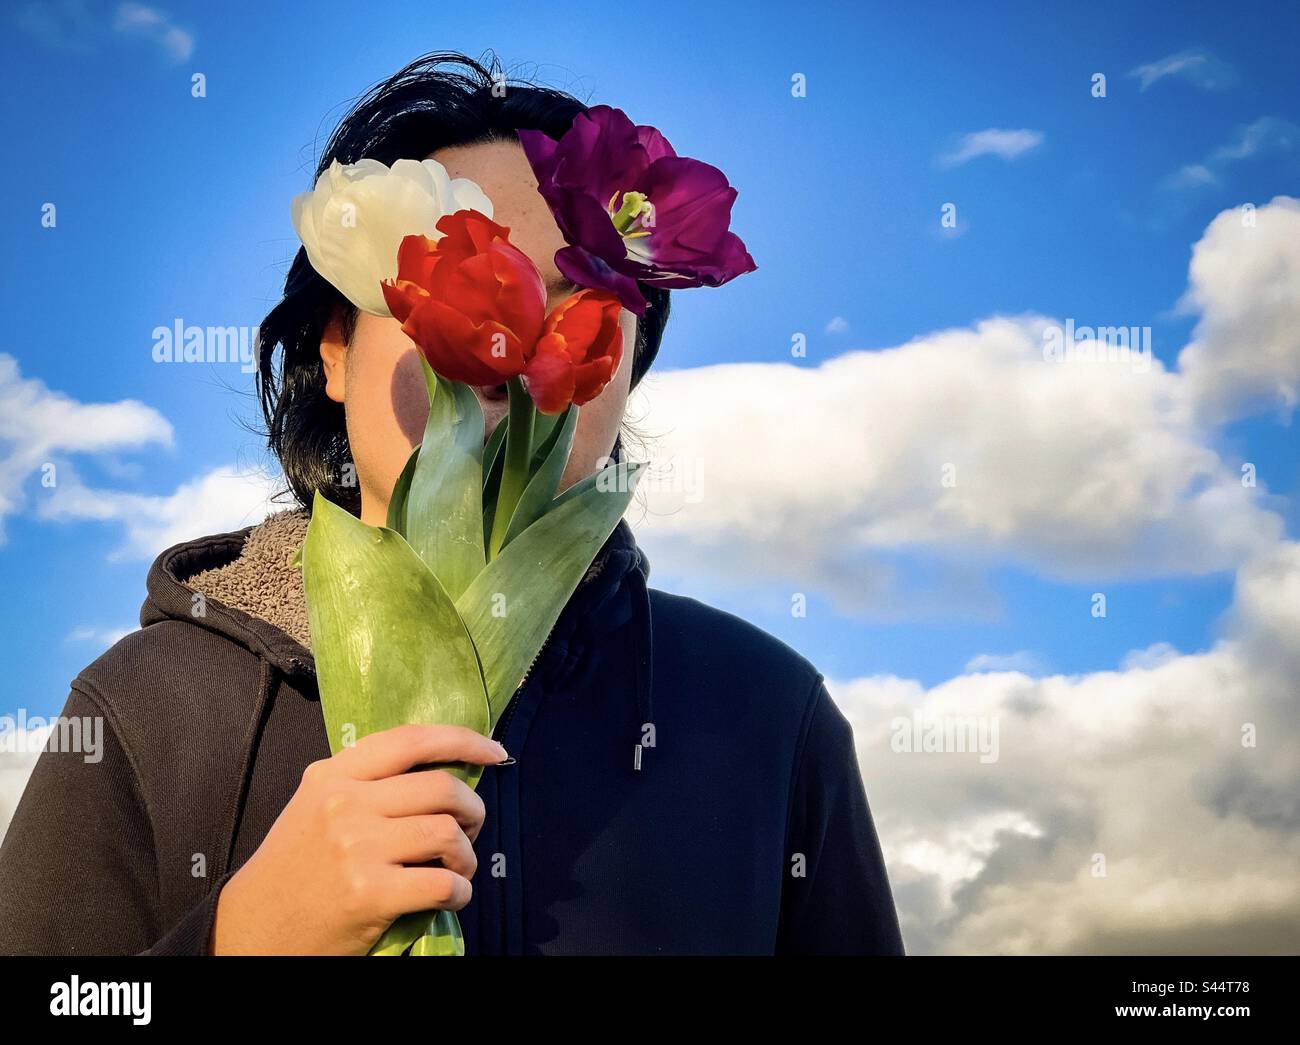 Dans les nuages. Portrait d'un jeune homme tenant un bouquet de fleurs de tulipe de couleur mélangée contre le ciel bleu avec des nuages blancs moelleux. Face cachée. Thème du printemps. Banque D'Images